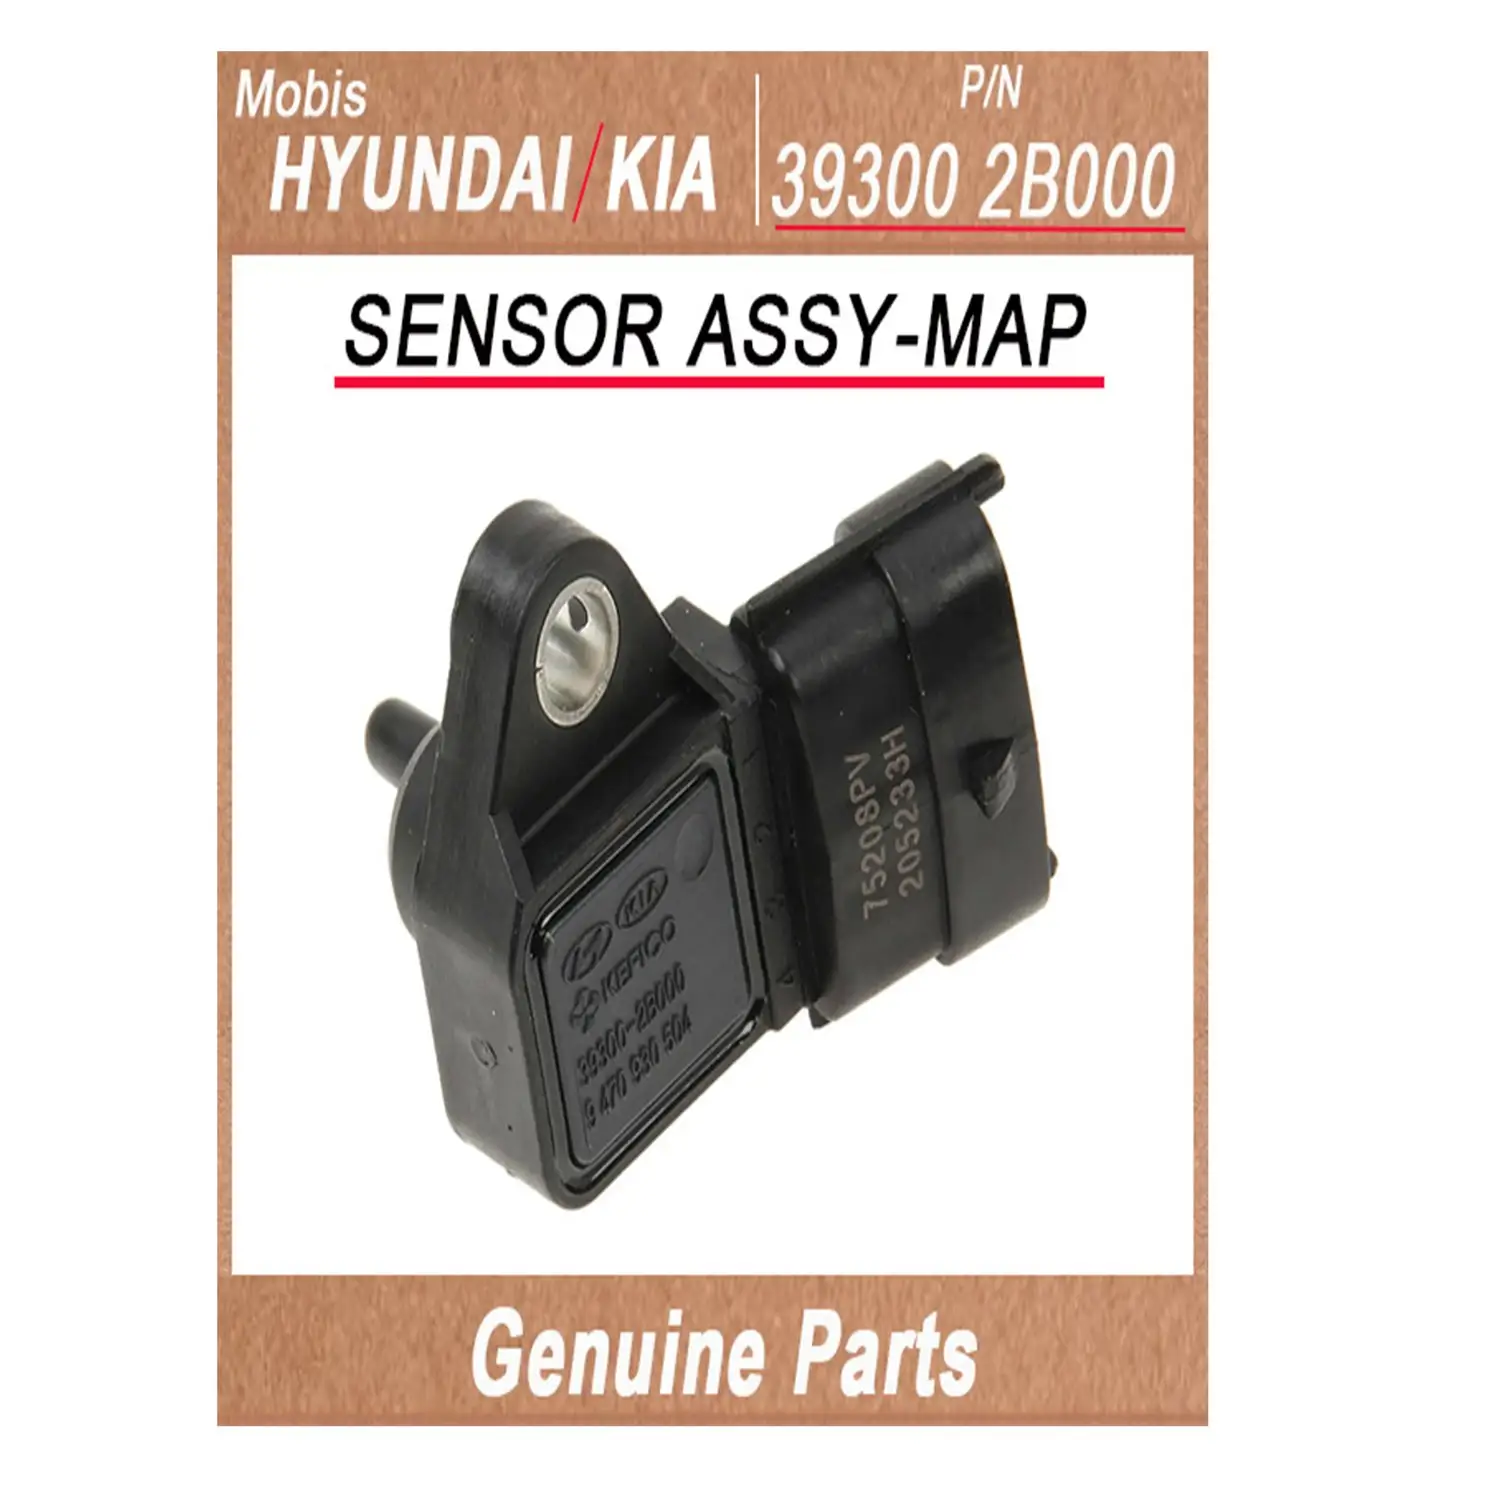 393002B000/sensör ASSY-MAP/orijinal kore otomotiv yedek parçaları/hyundai kia (mobis)